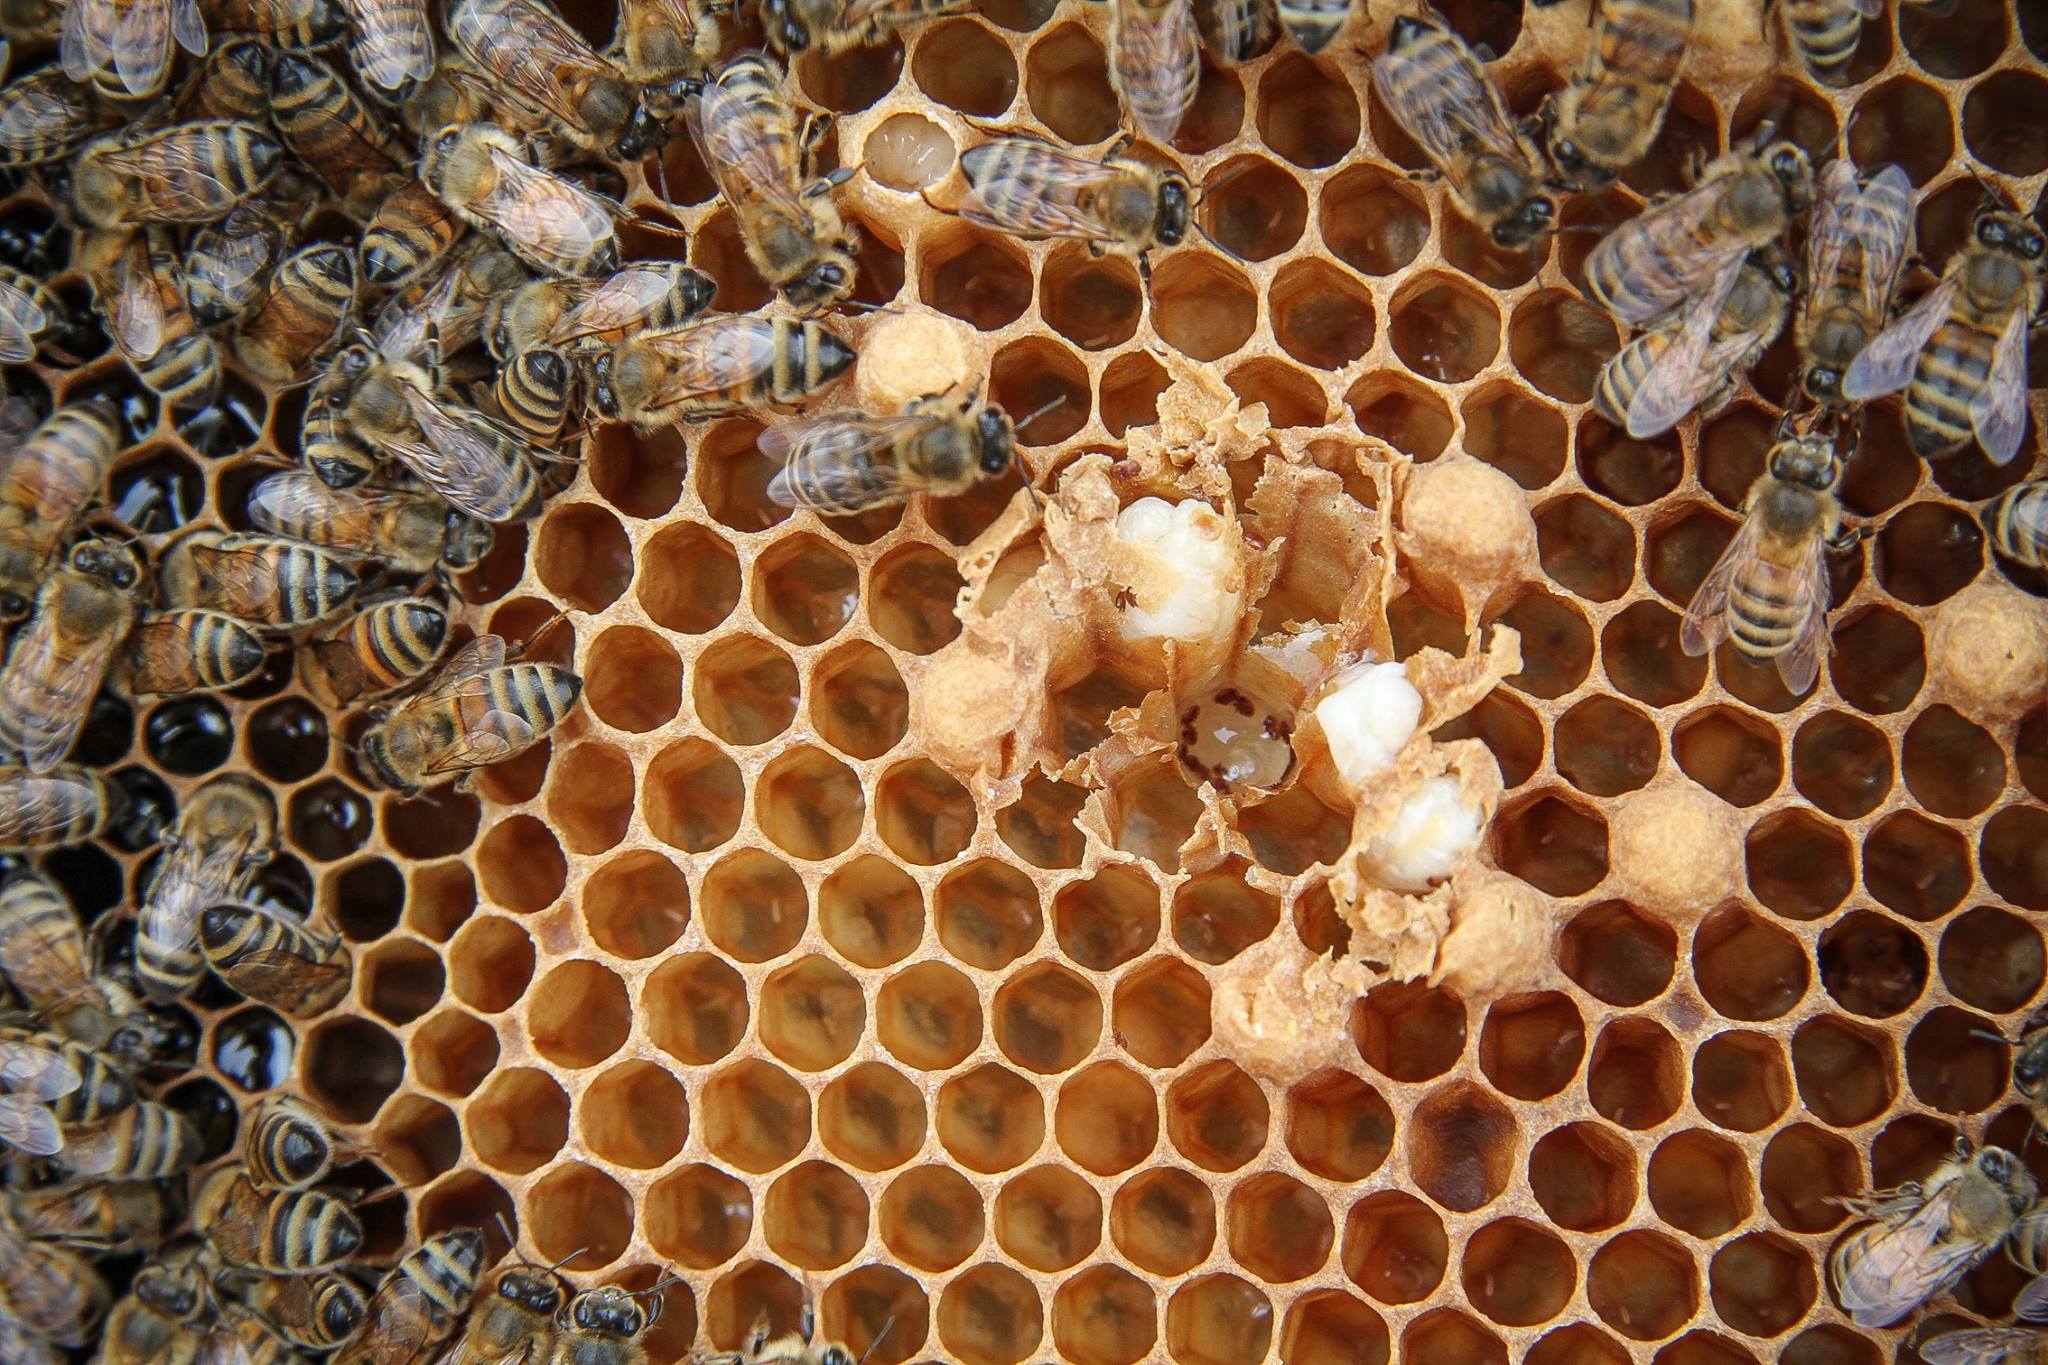 فعاليات الصالون الوطني للعسل وعتاد تربية النحل